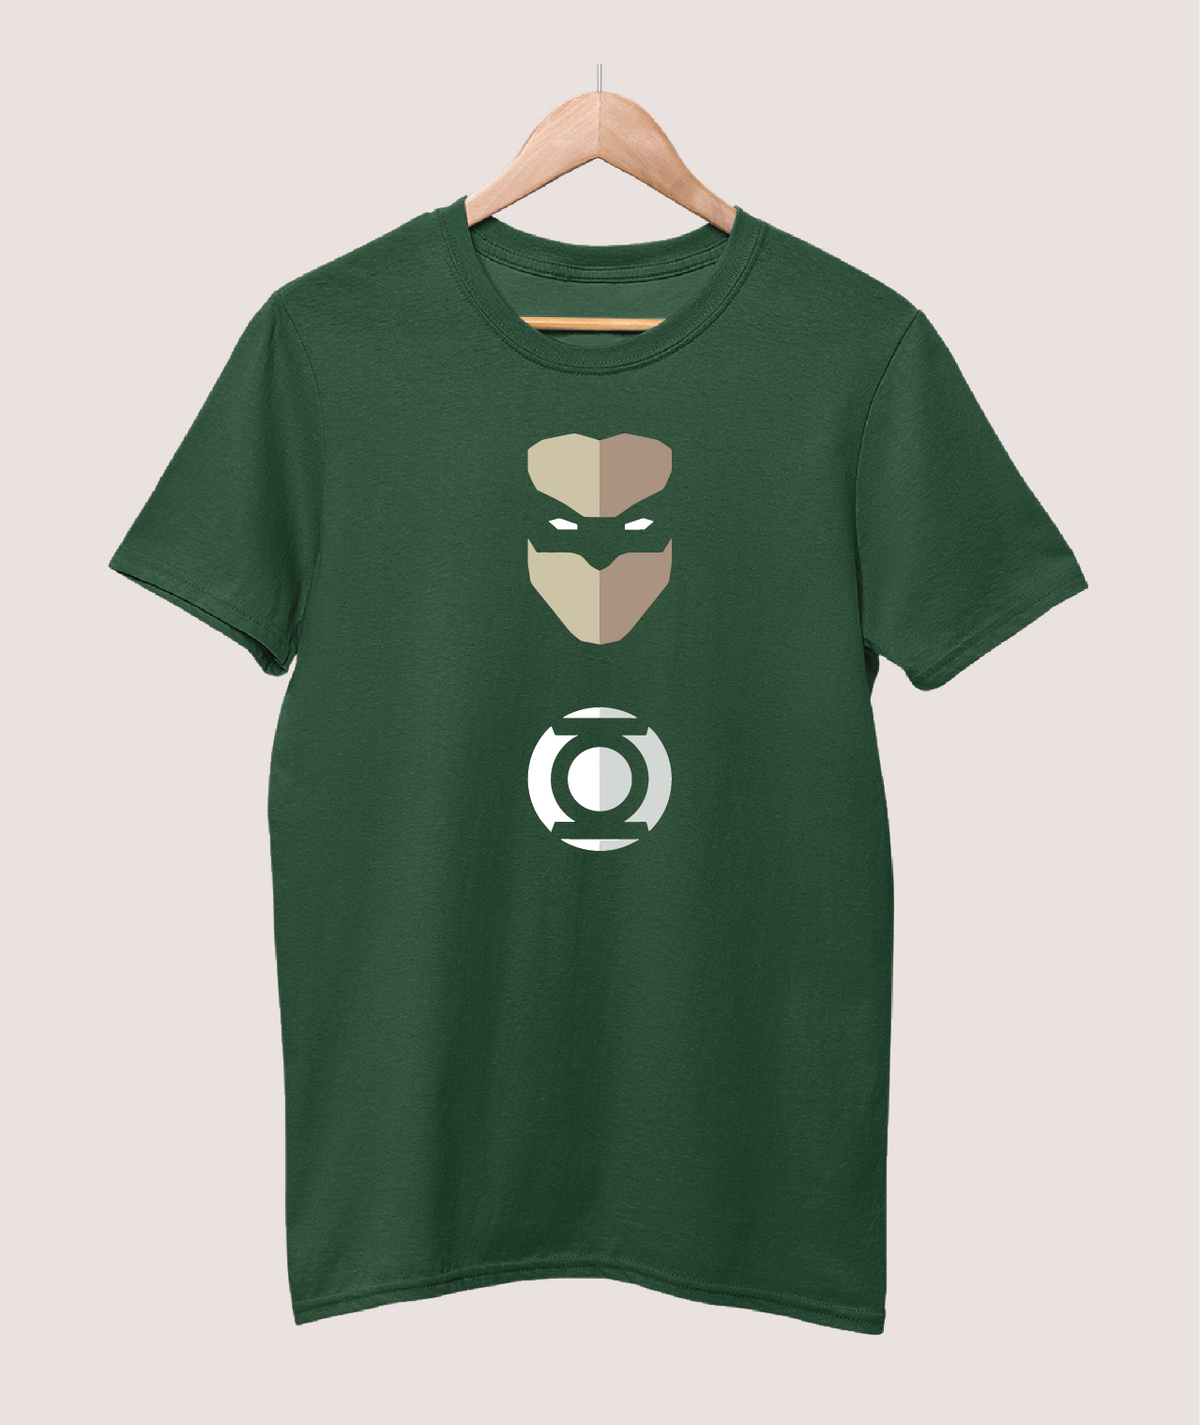 Green Lantern Minimal T-shirt